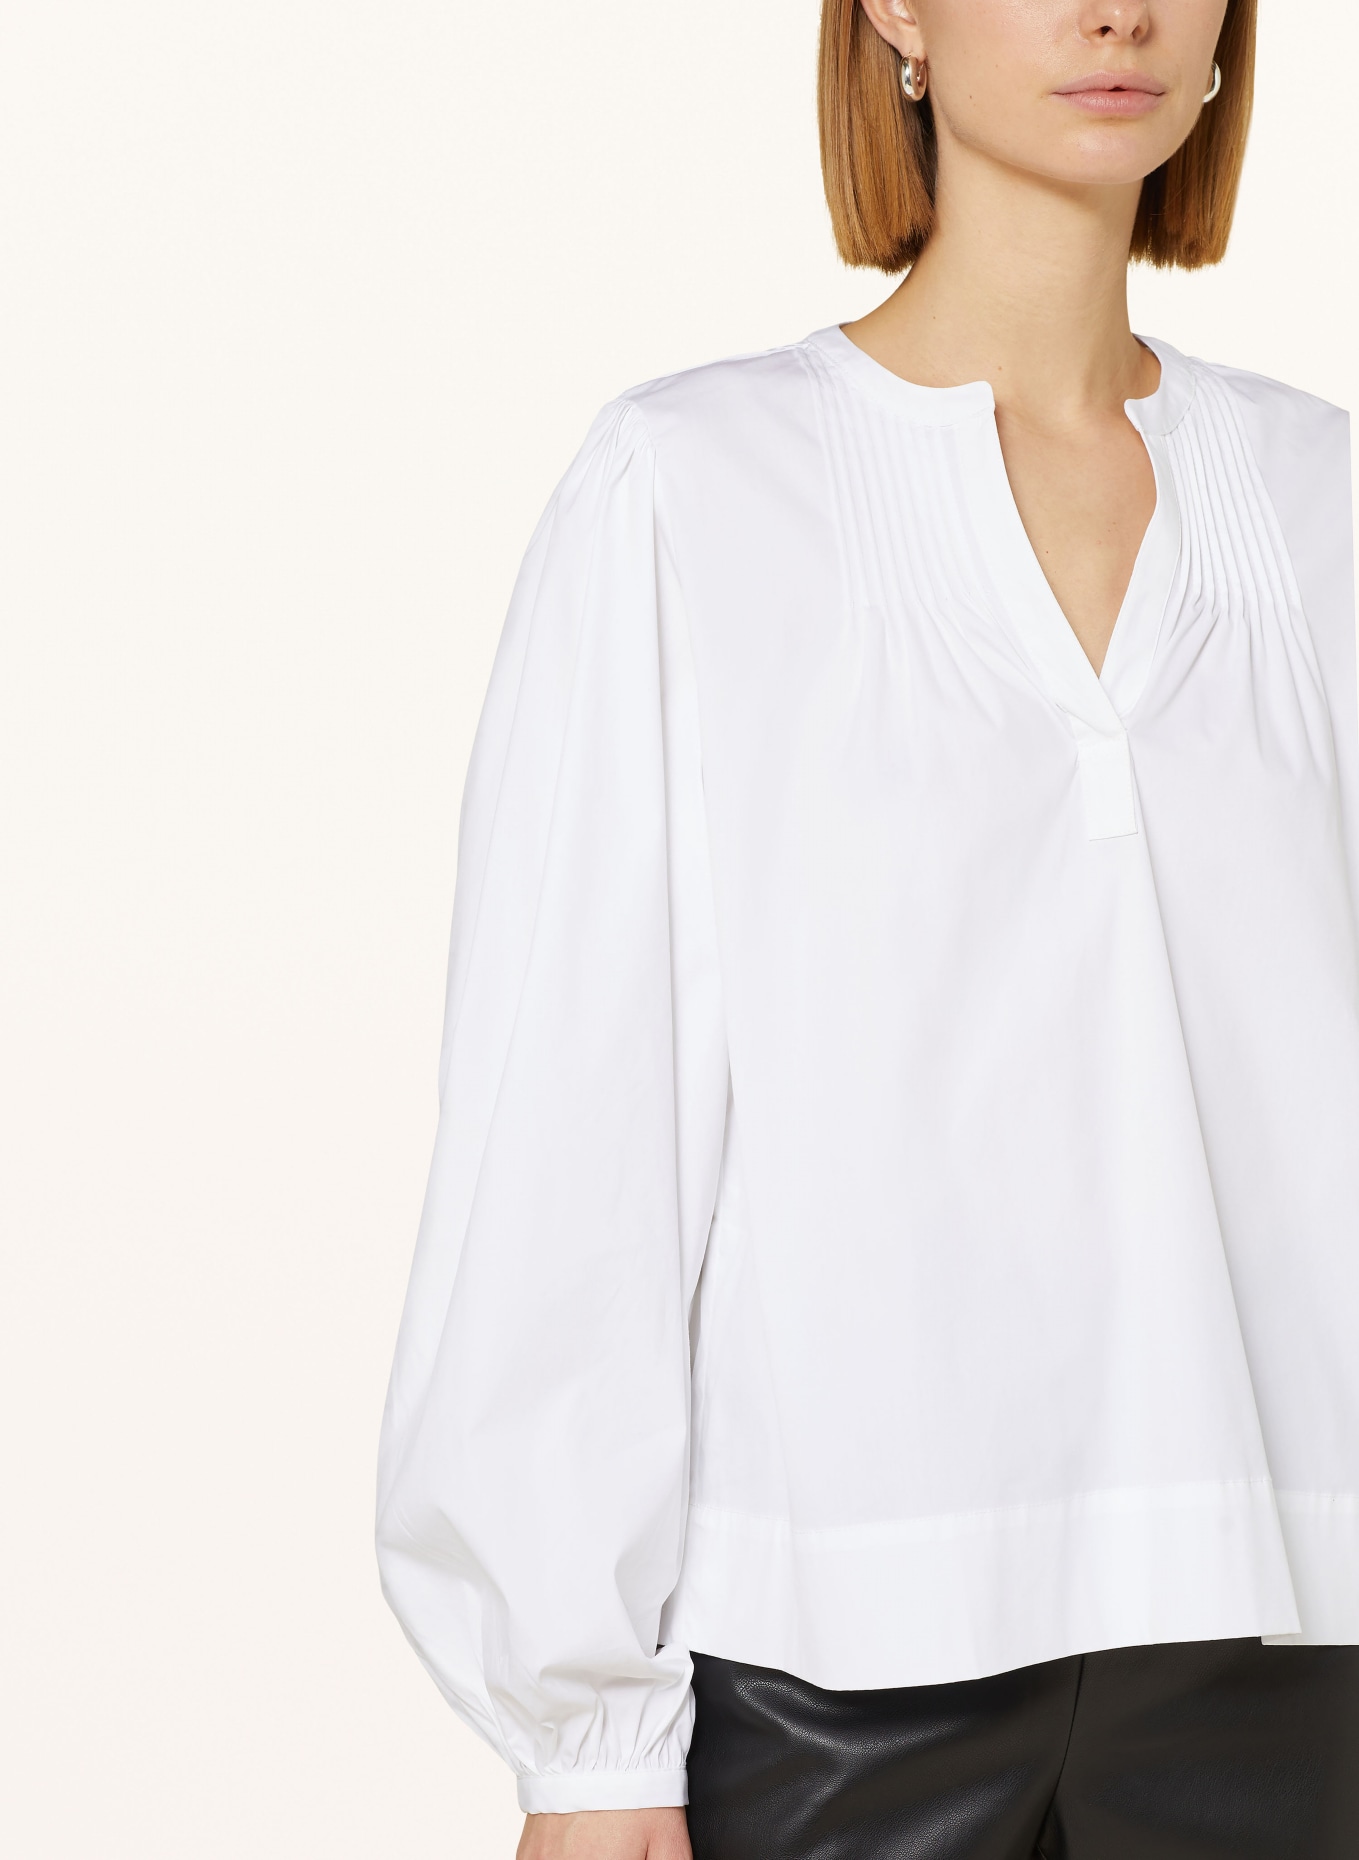 TONNO & PANNA Shirt blouse, Color: WHITE (Image 4)